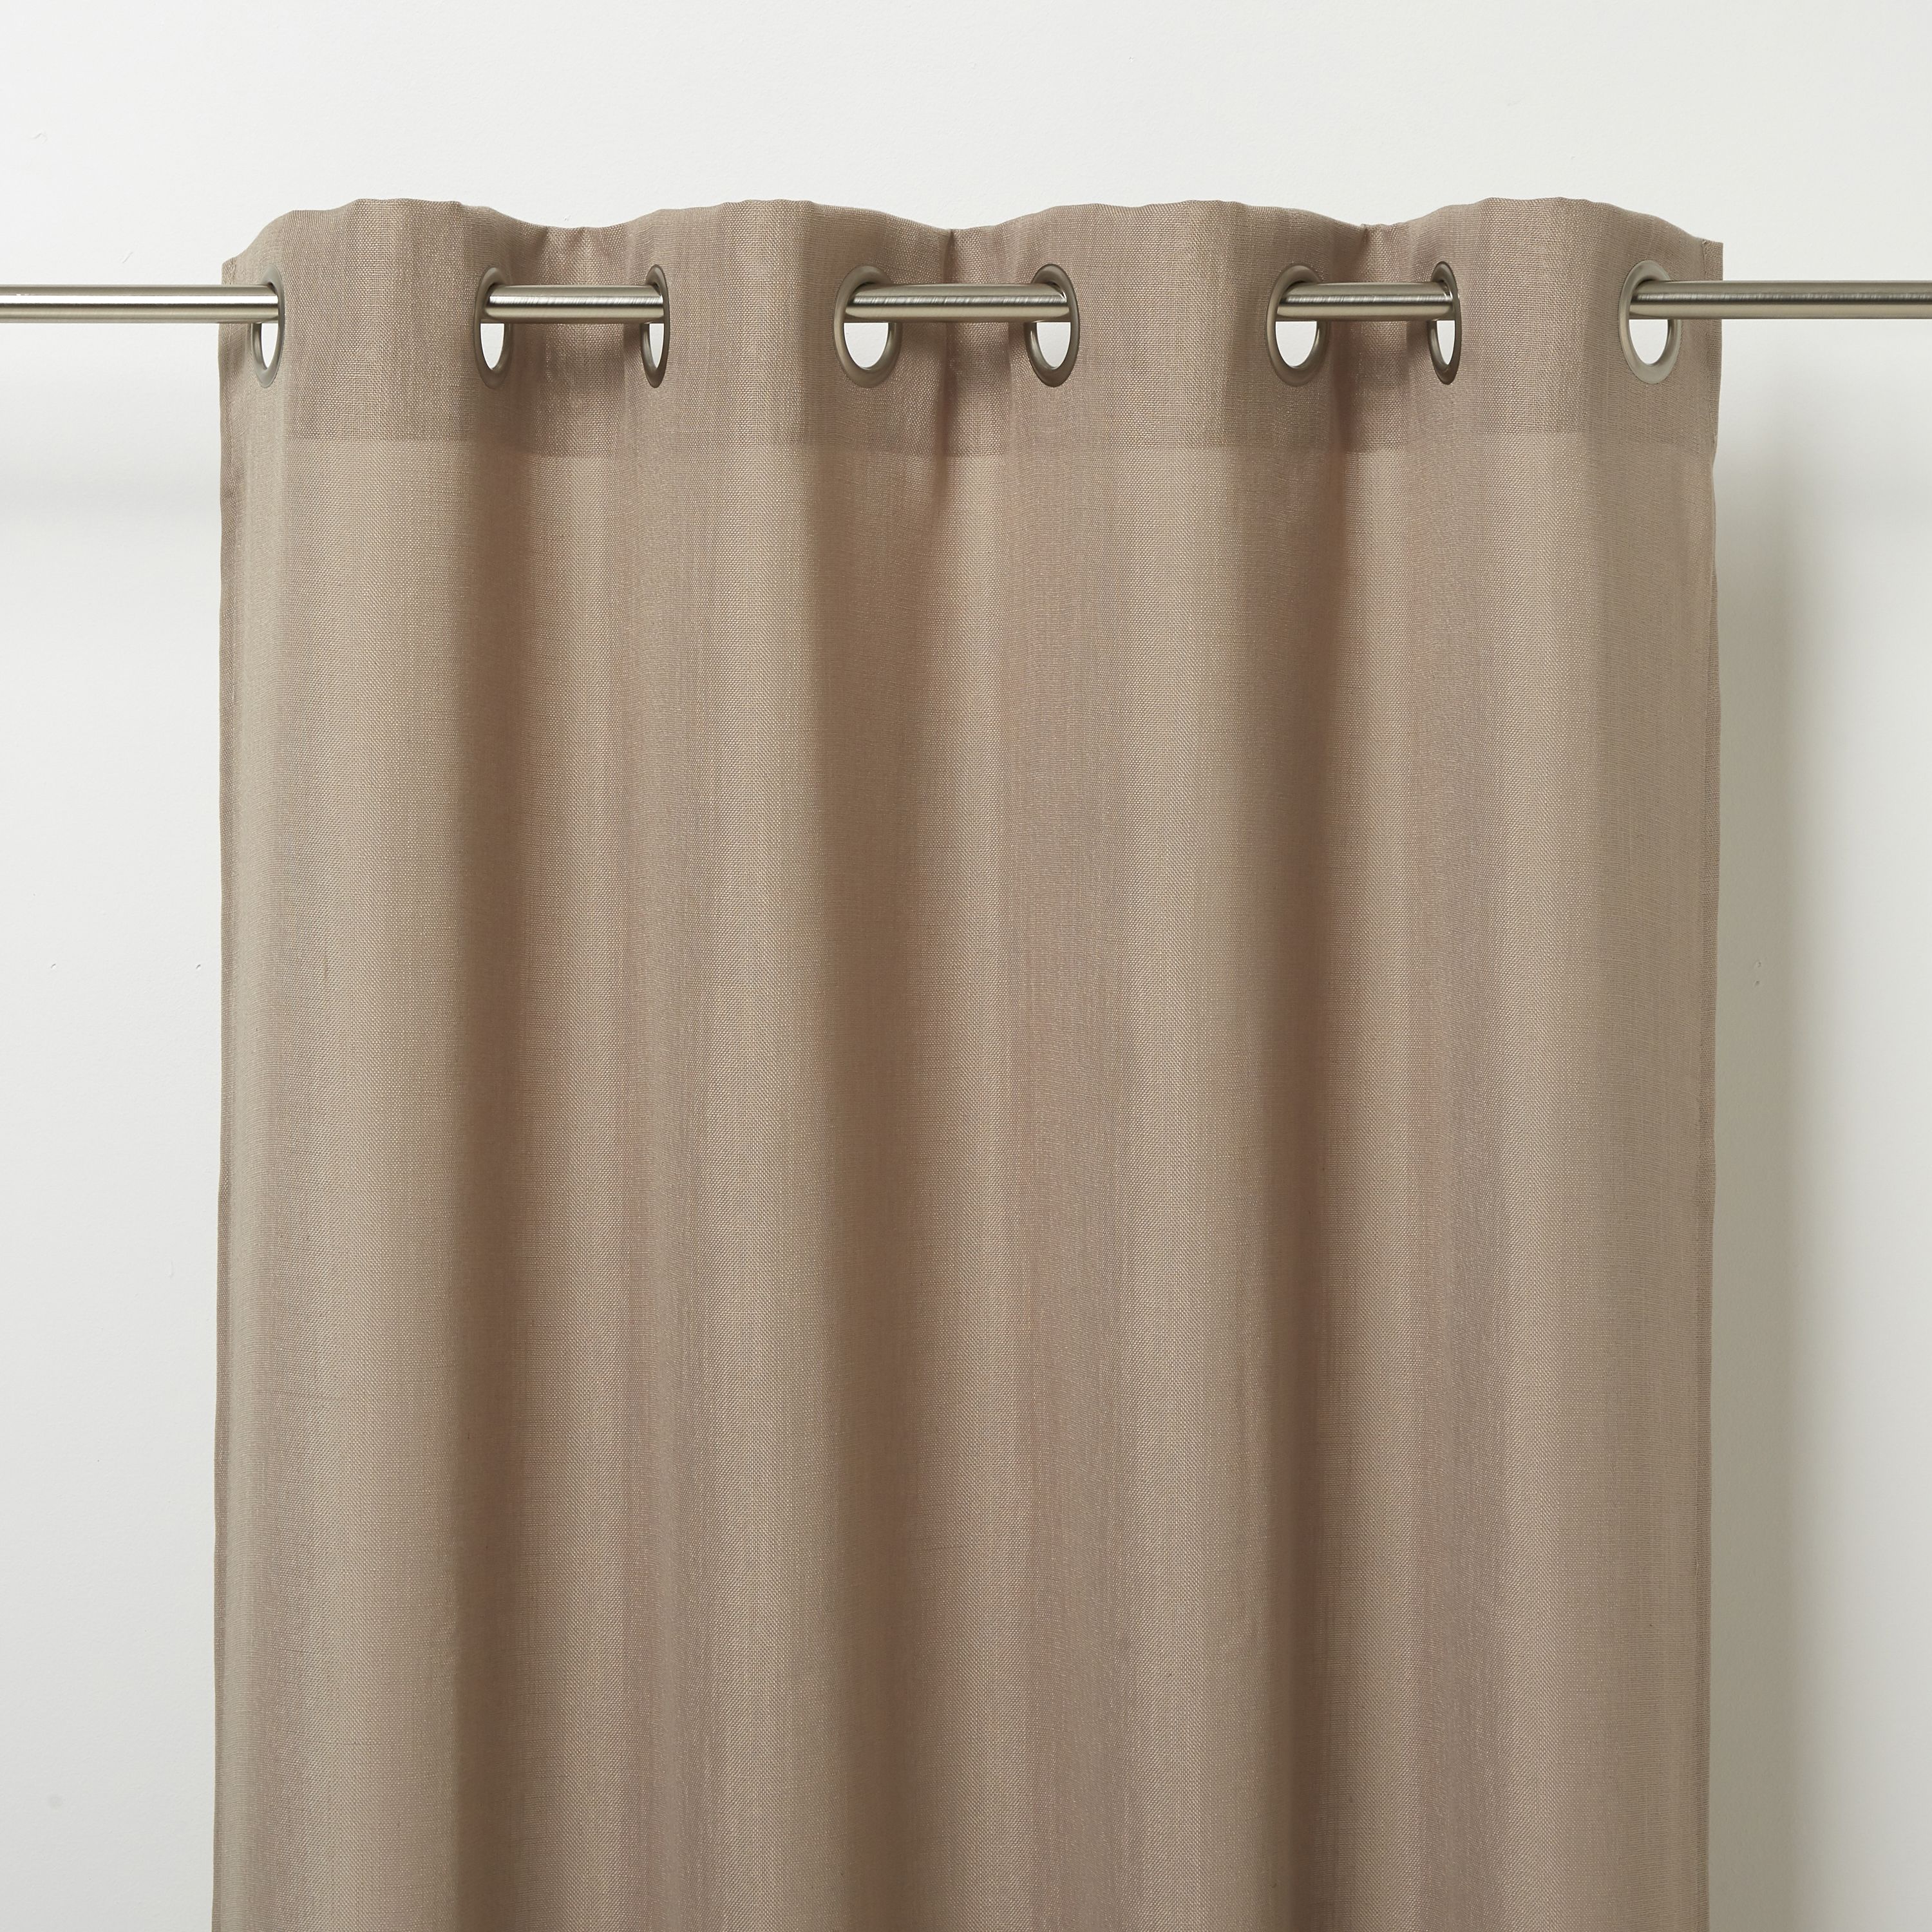 Kippens Beige Plain Unlined Eyelet Voile curtain (W)140cm (L)260cm, Single